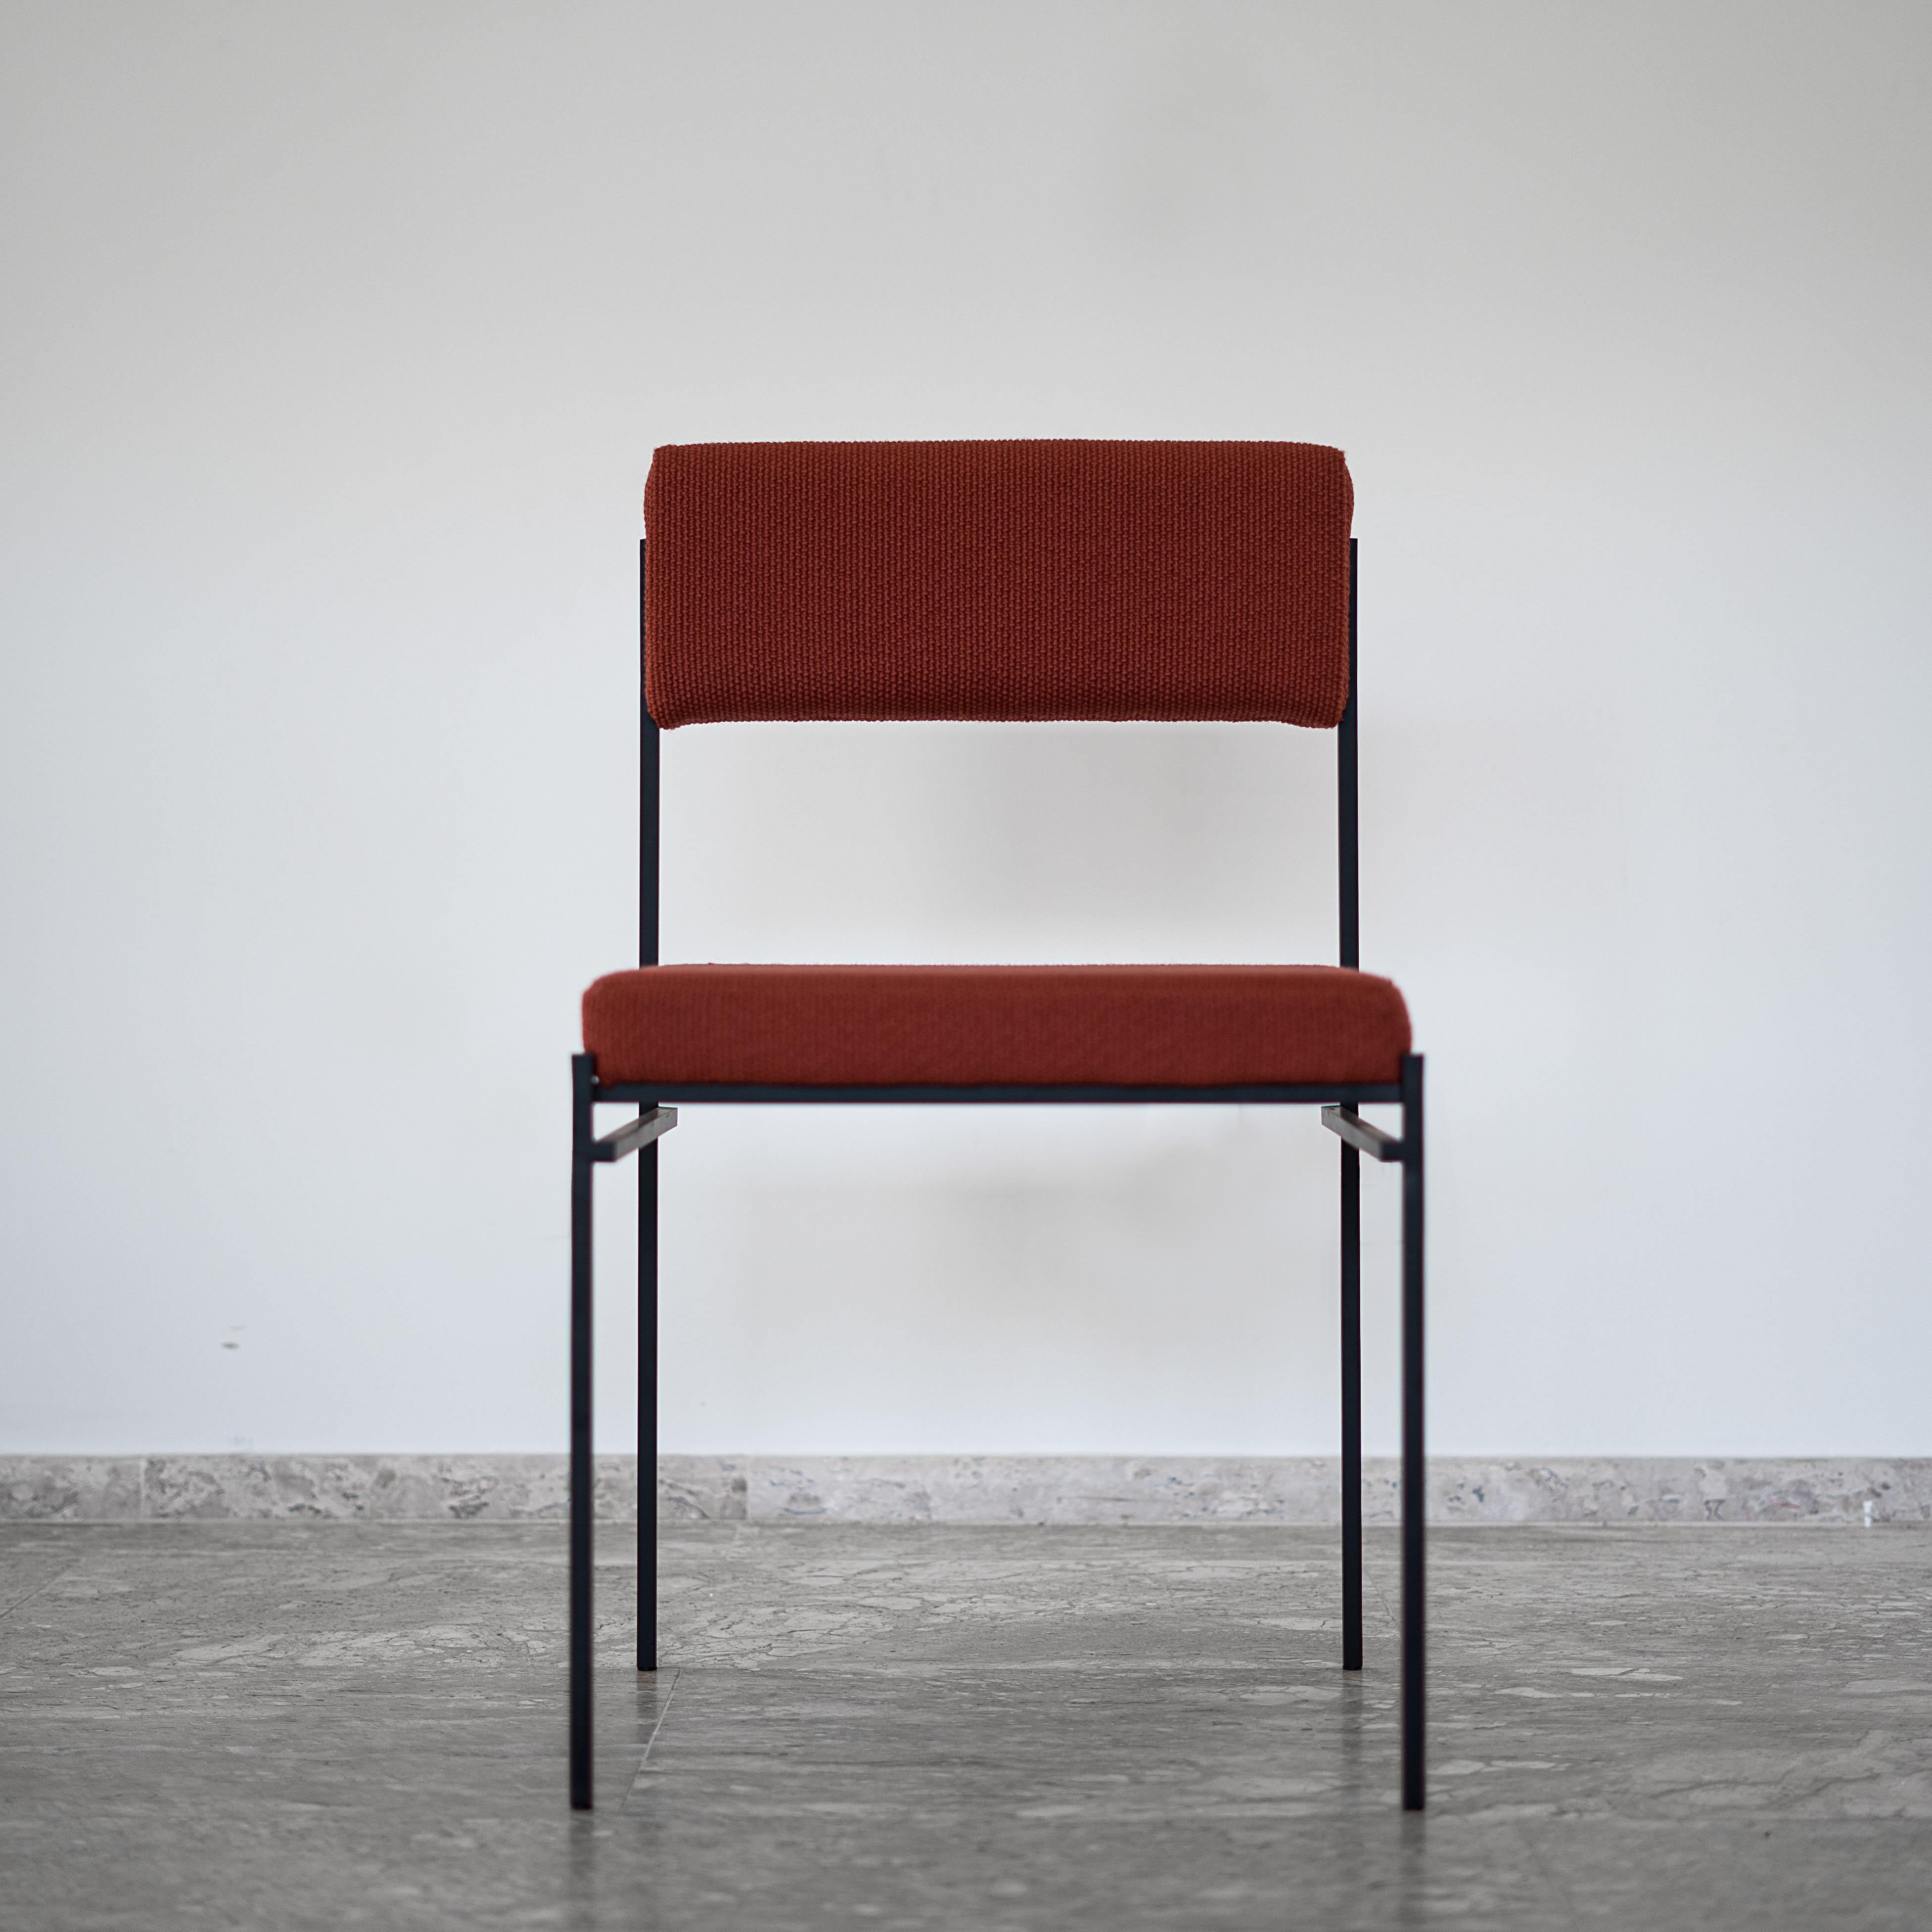 Dieser zeitgenössische Sessel ist vom modernen brasilianischen Design inspiriert. Mit einer quadratischen DNA soll ein geometrischer und essentieller Stuhl geschaffen werden. Alle strukturellen Elemente, die seine Funktion ausmachen, sind so